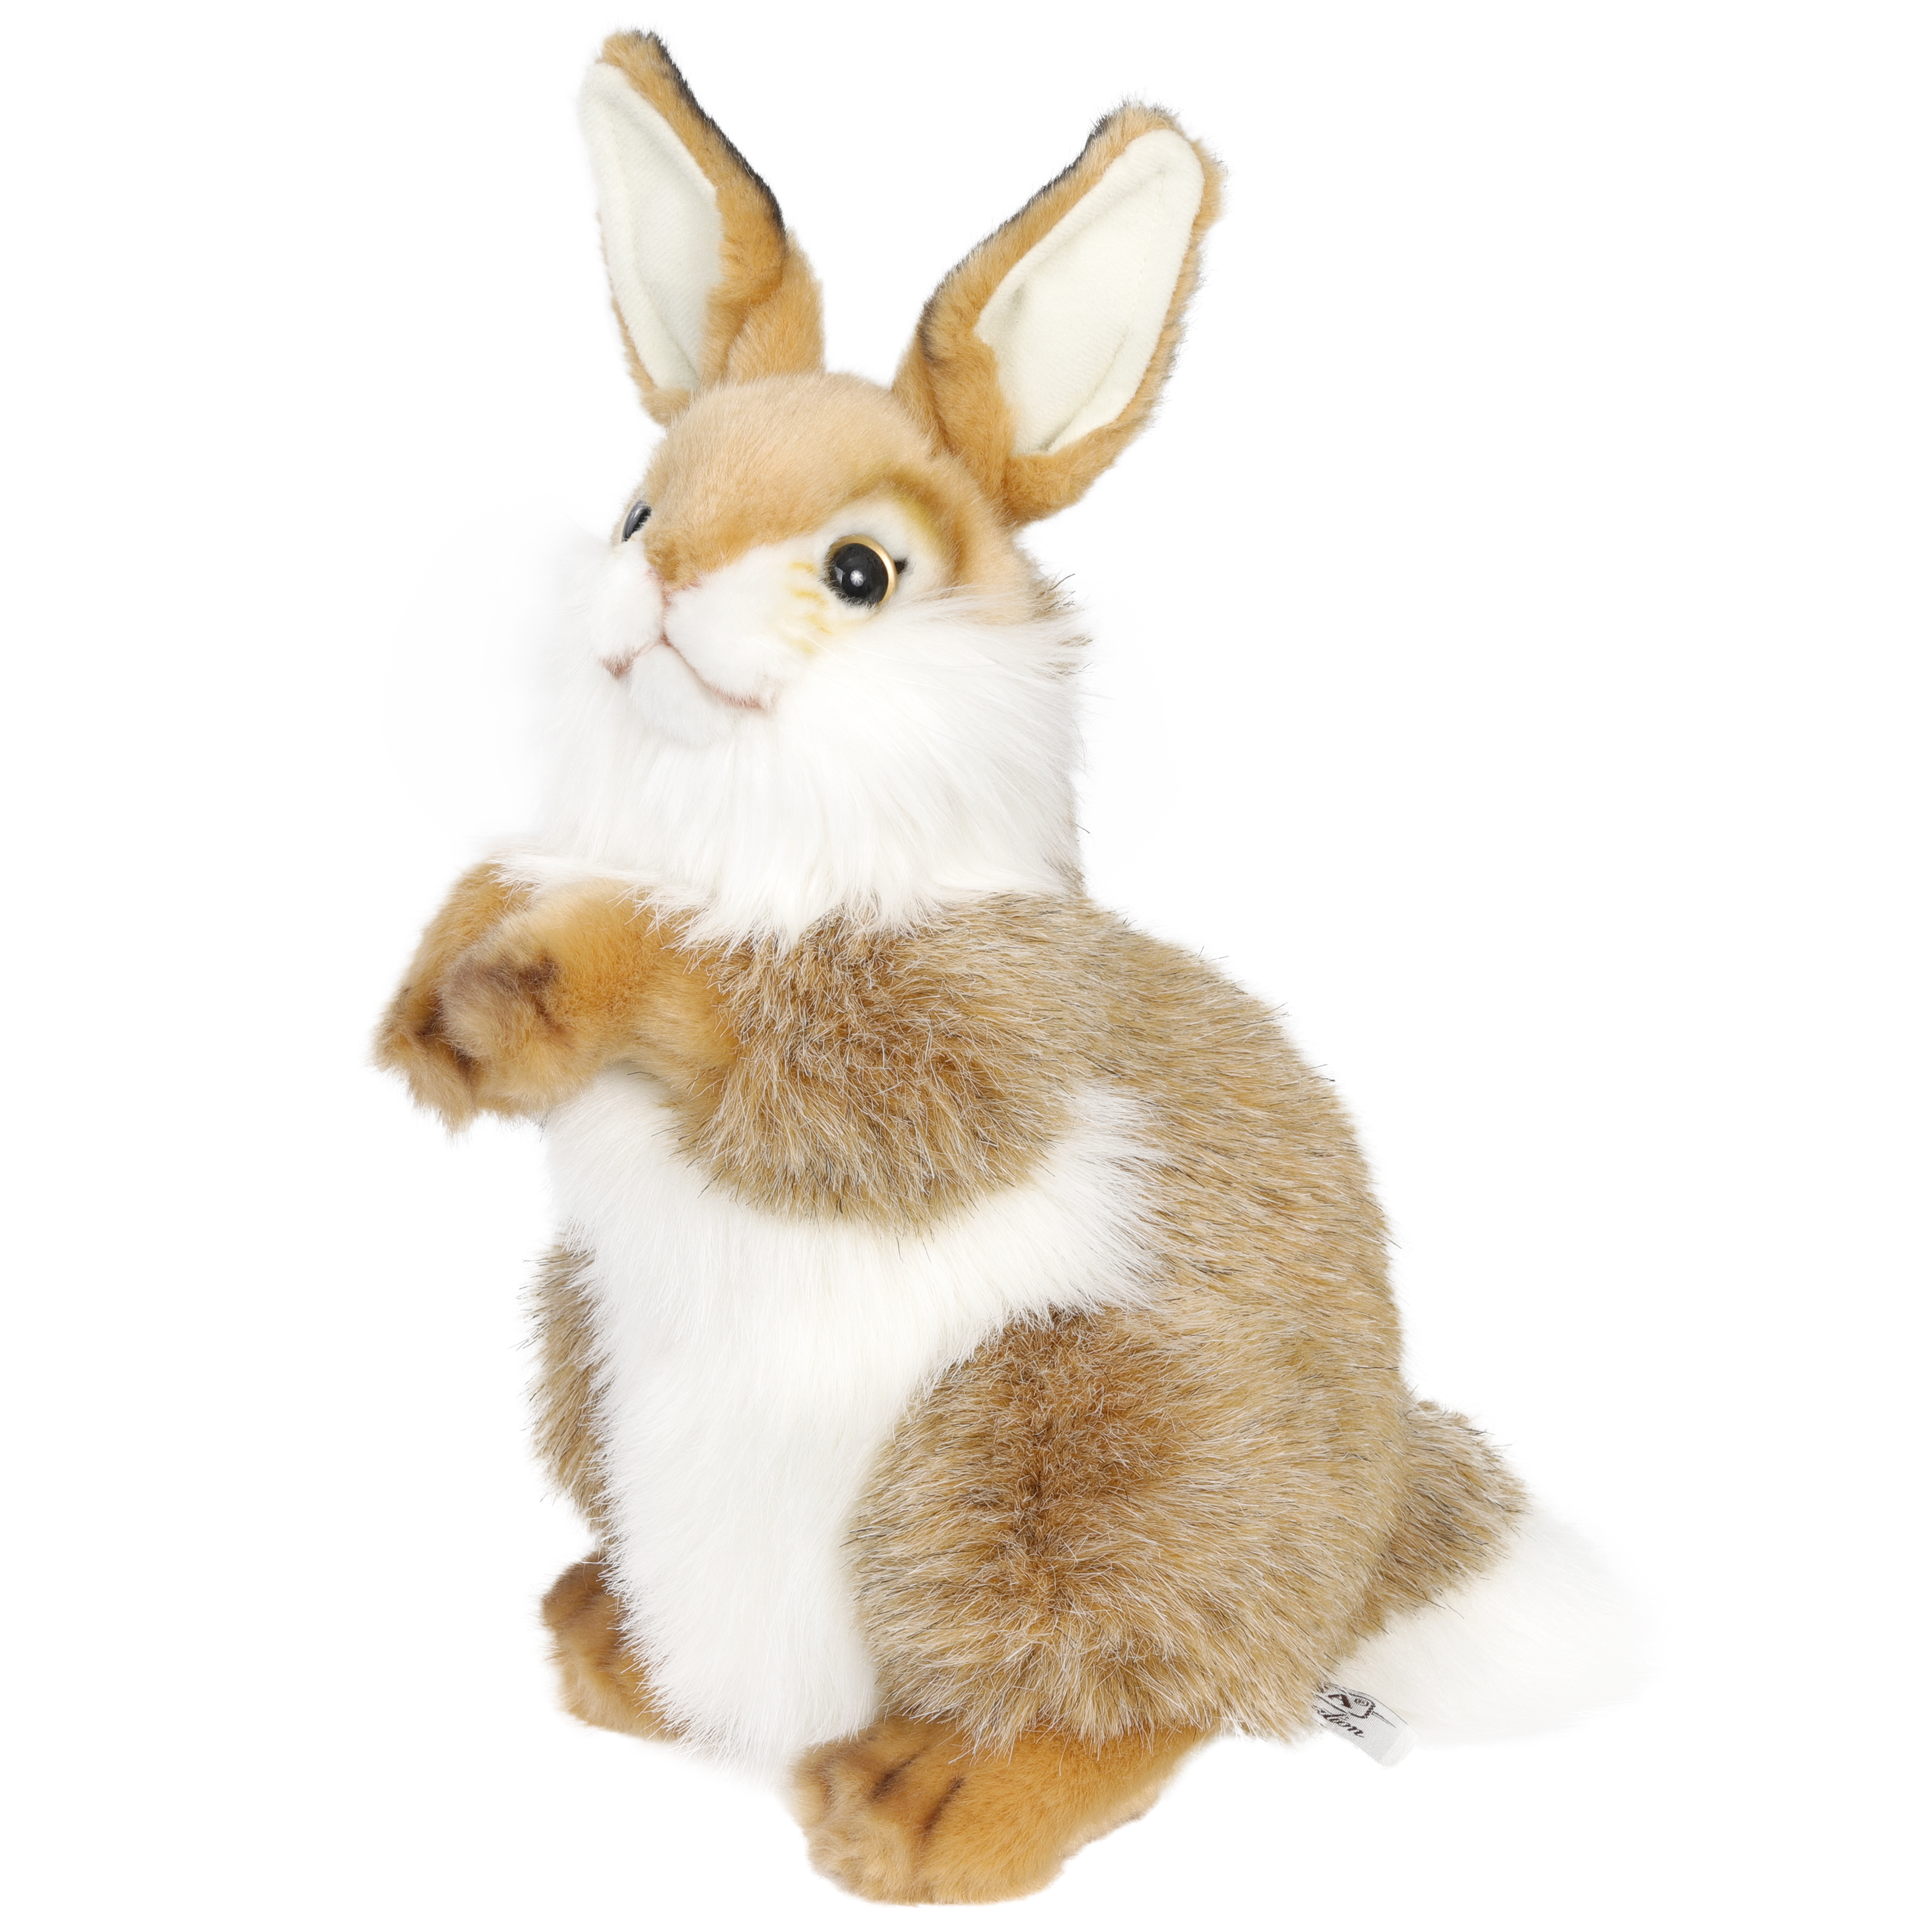 Реалистичная мягкая игрушка Hansa Creation Кролик, 30 см реалистичная мягкая игрушка hansa creation кролик 30 см